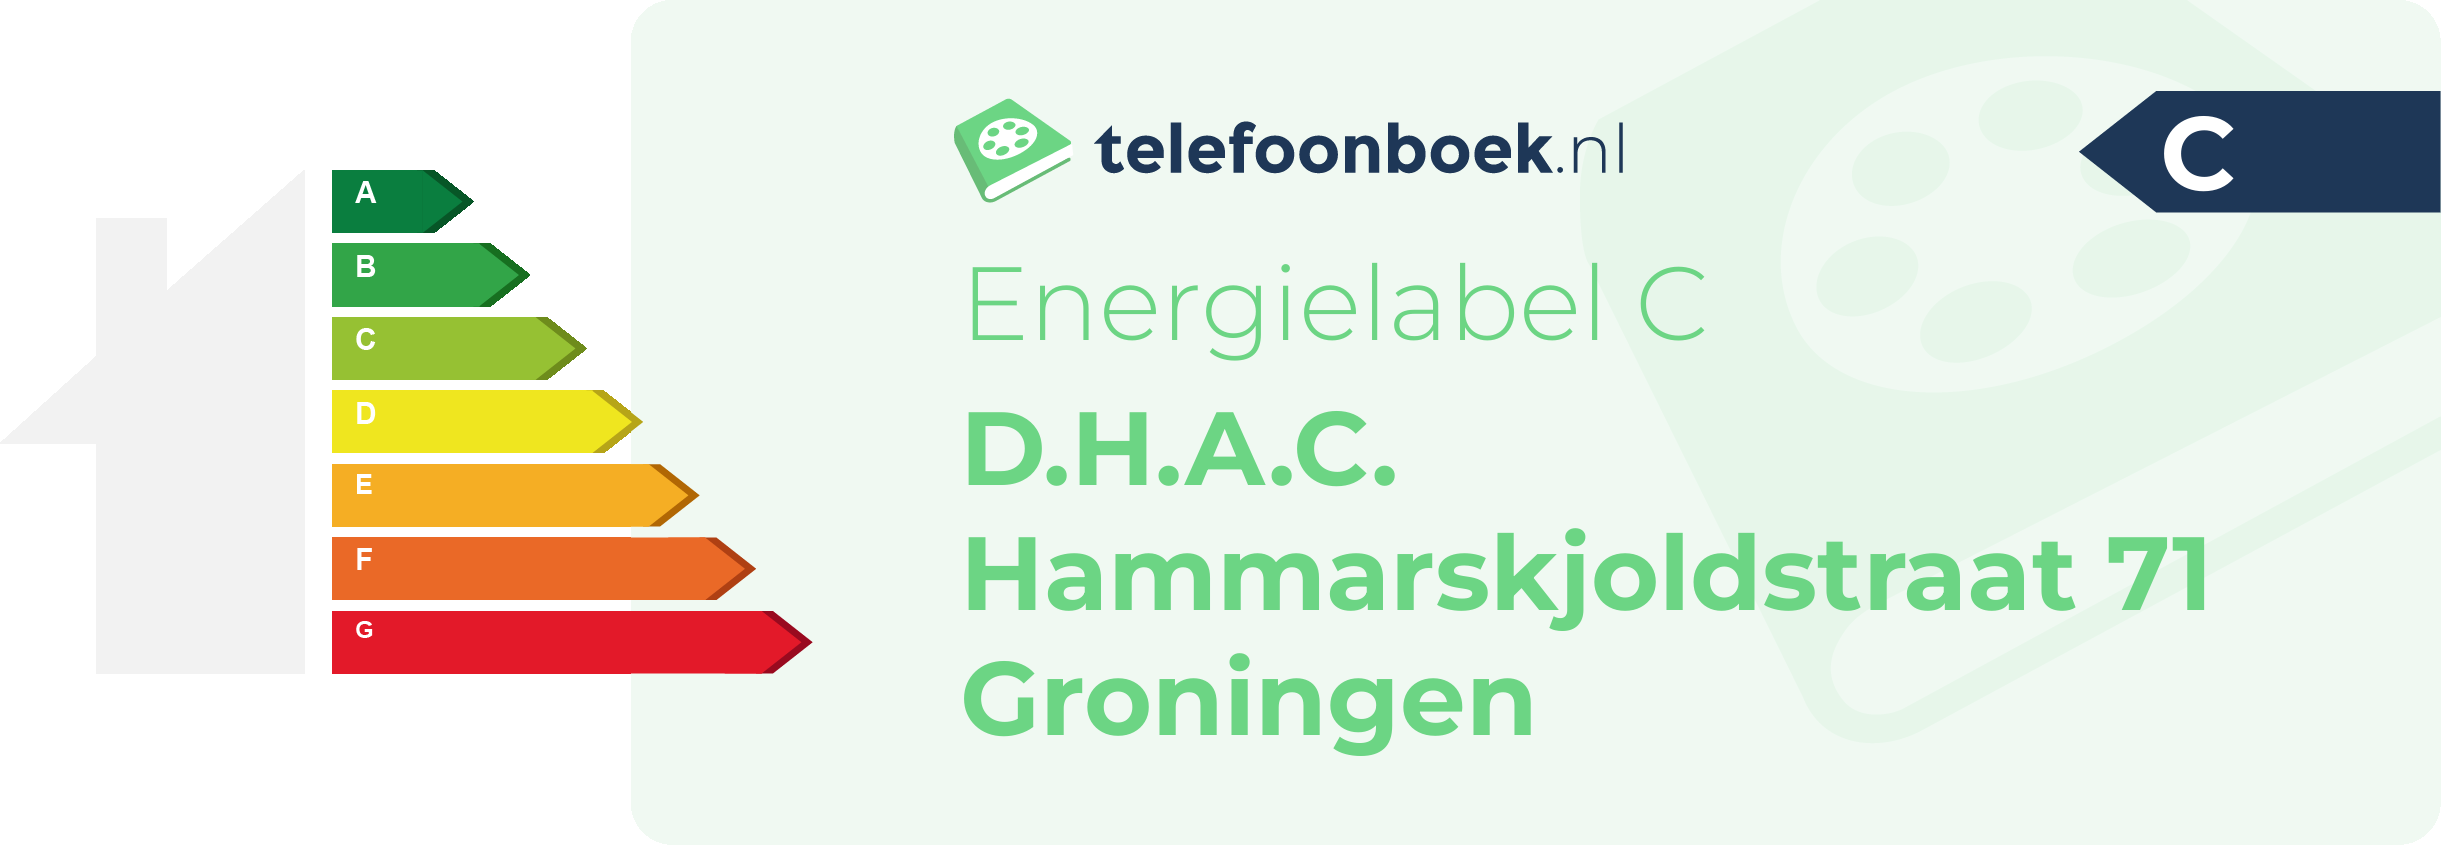 Energielabel D.H.A.C. Hammarskjoldstraat 71 Groningen